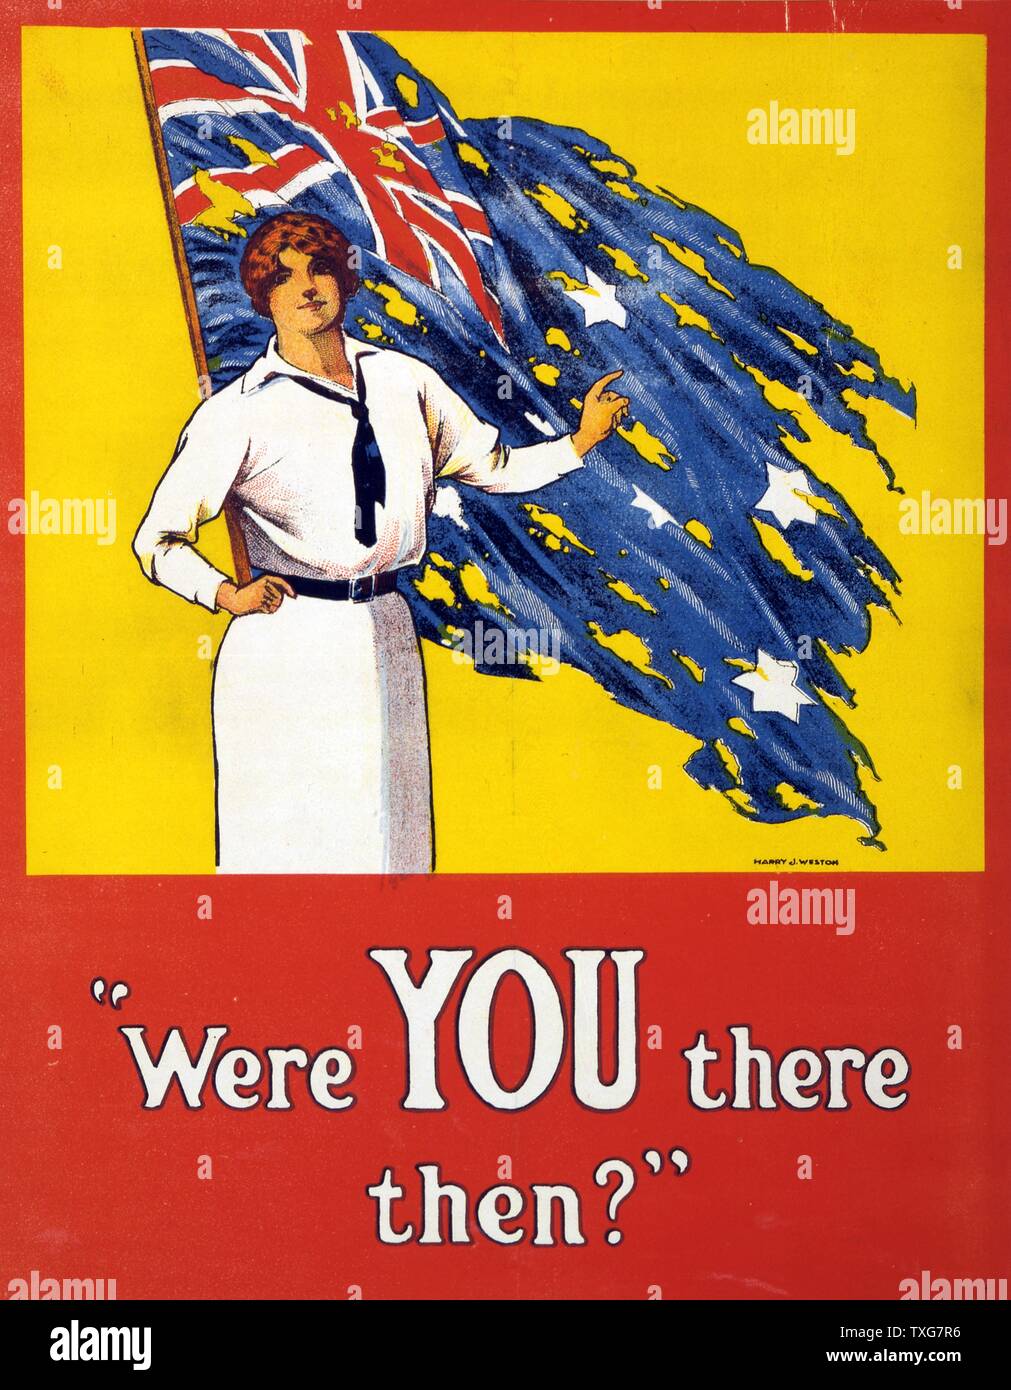 Der Erste Weltkrieg: "Waren Sie es dann?" Plakat, 1916. Frau steht vor tattered Australische Flagge die Frage. Schlacht von Fromelles, Western Front, Frankreich, 19.-20. Juli 1915, Australien 5,533 erlitten Verluste. Stockfoto